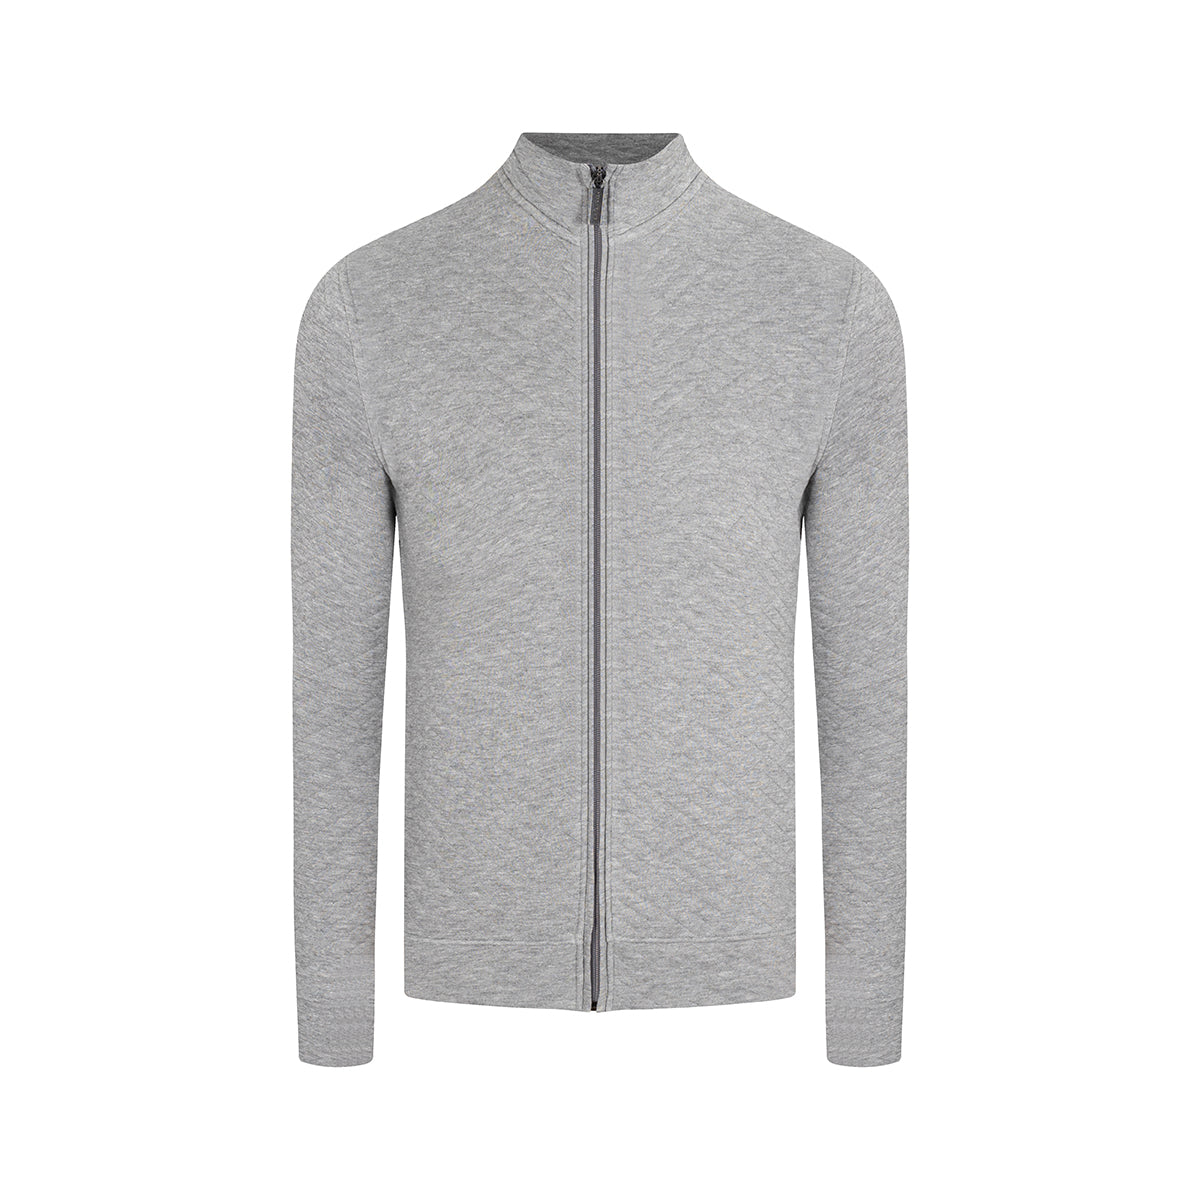 Sweater con cremallera en color gris de Perry Ellis SW00104021